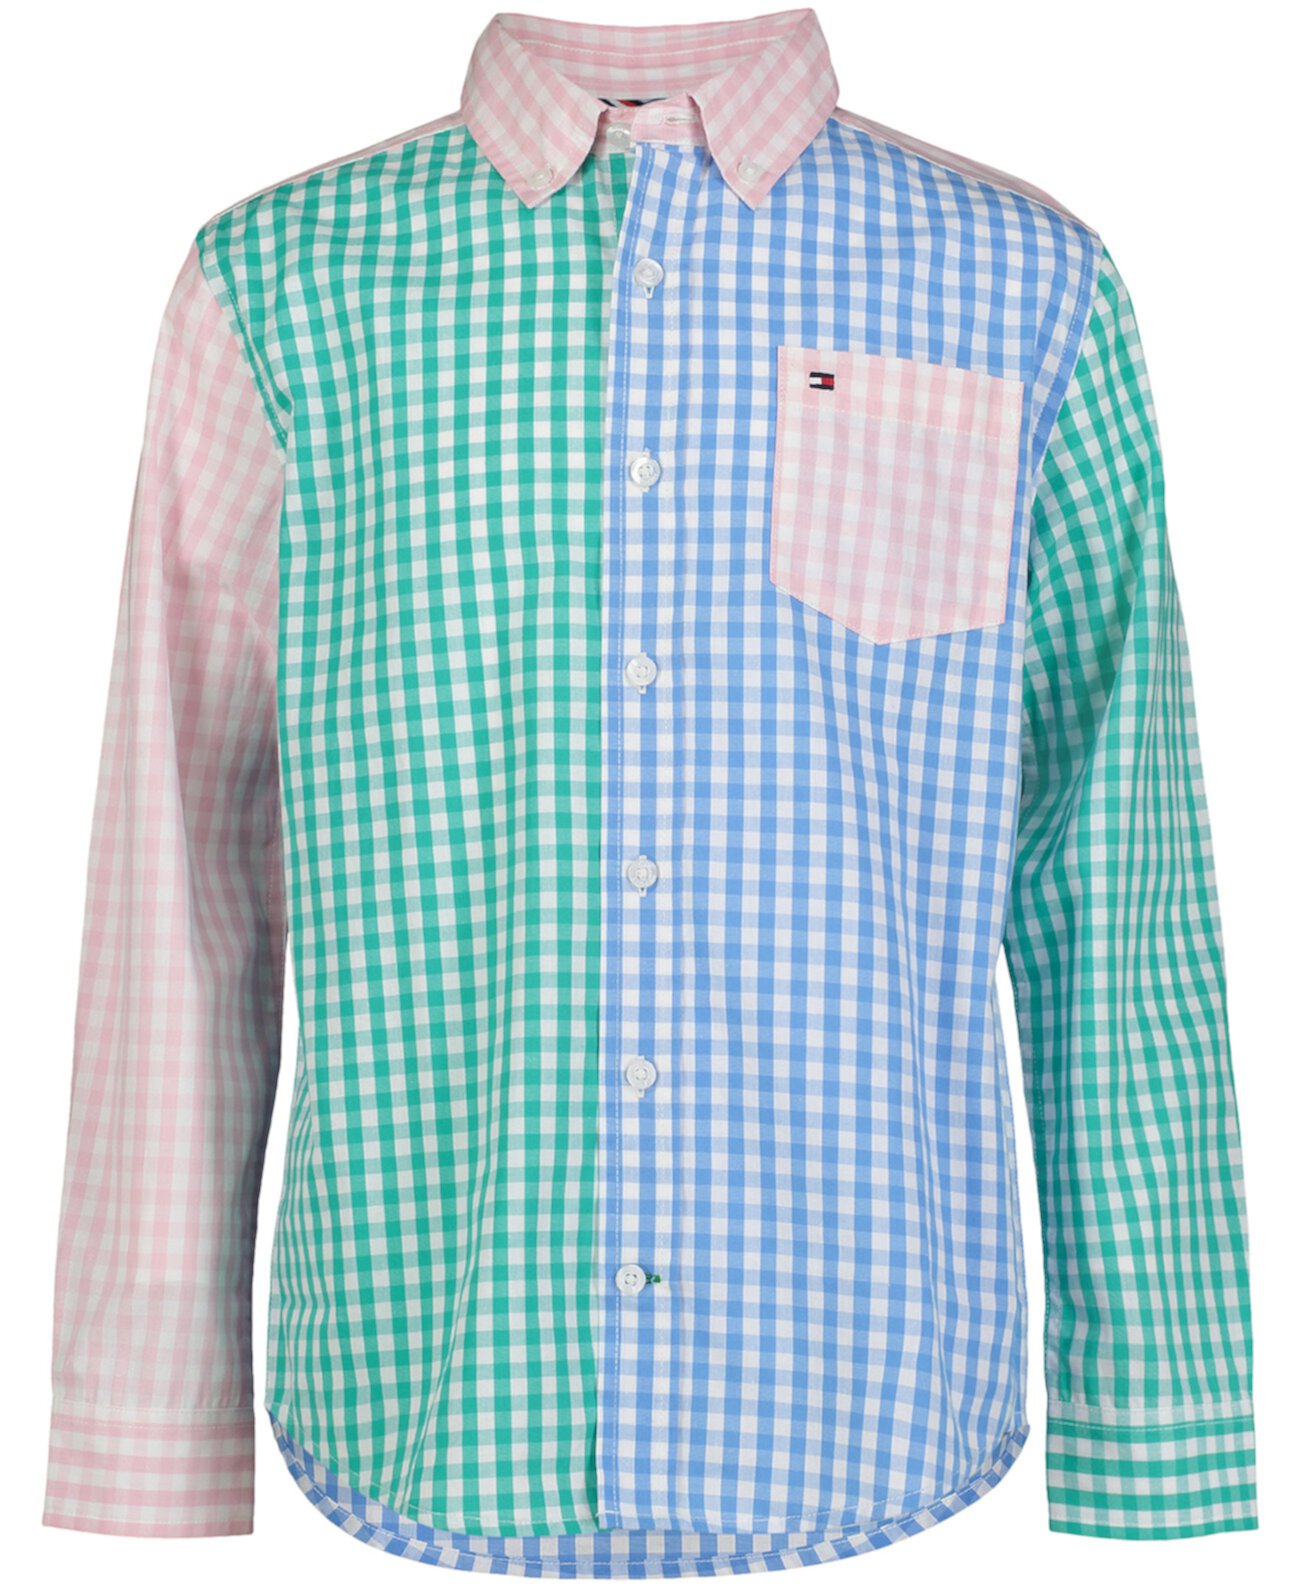 Разноцветная рубашка в мелкую клетку с длинными рукавами Big Boys Tommy Hilfiger